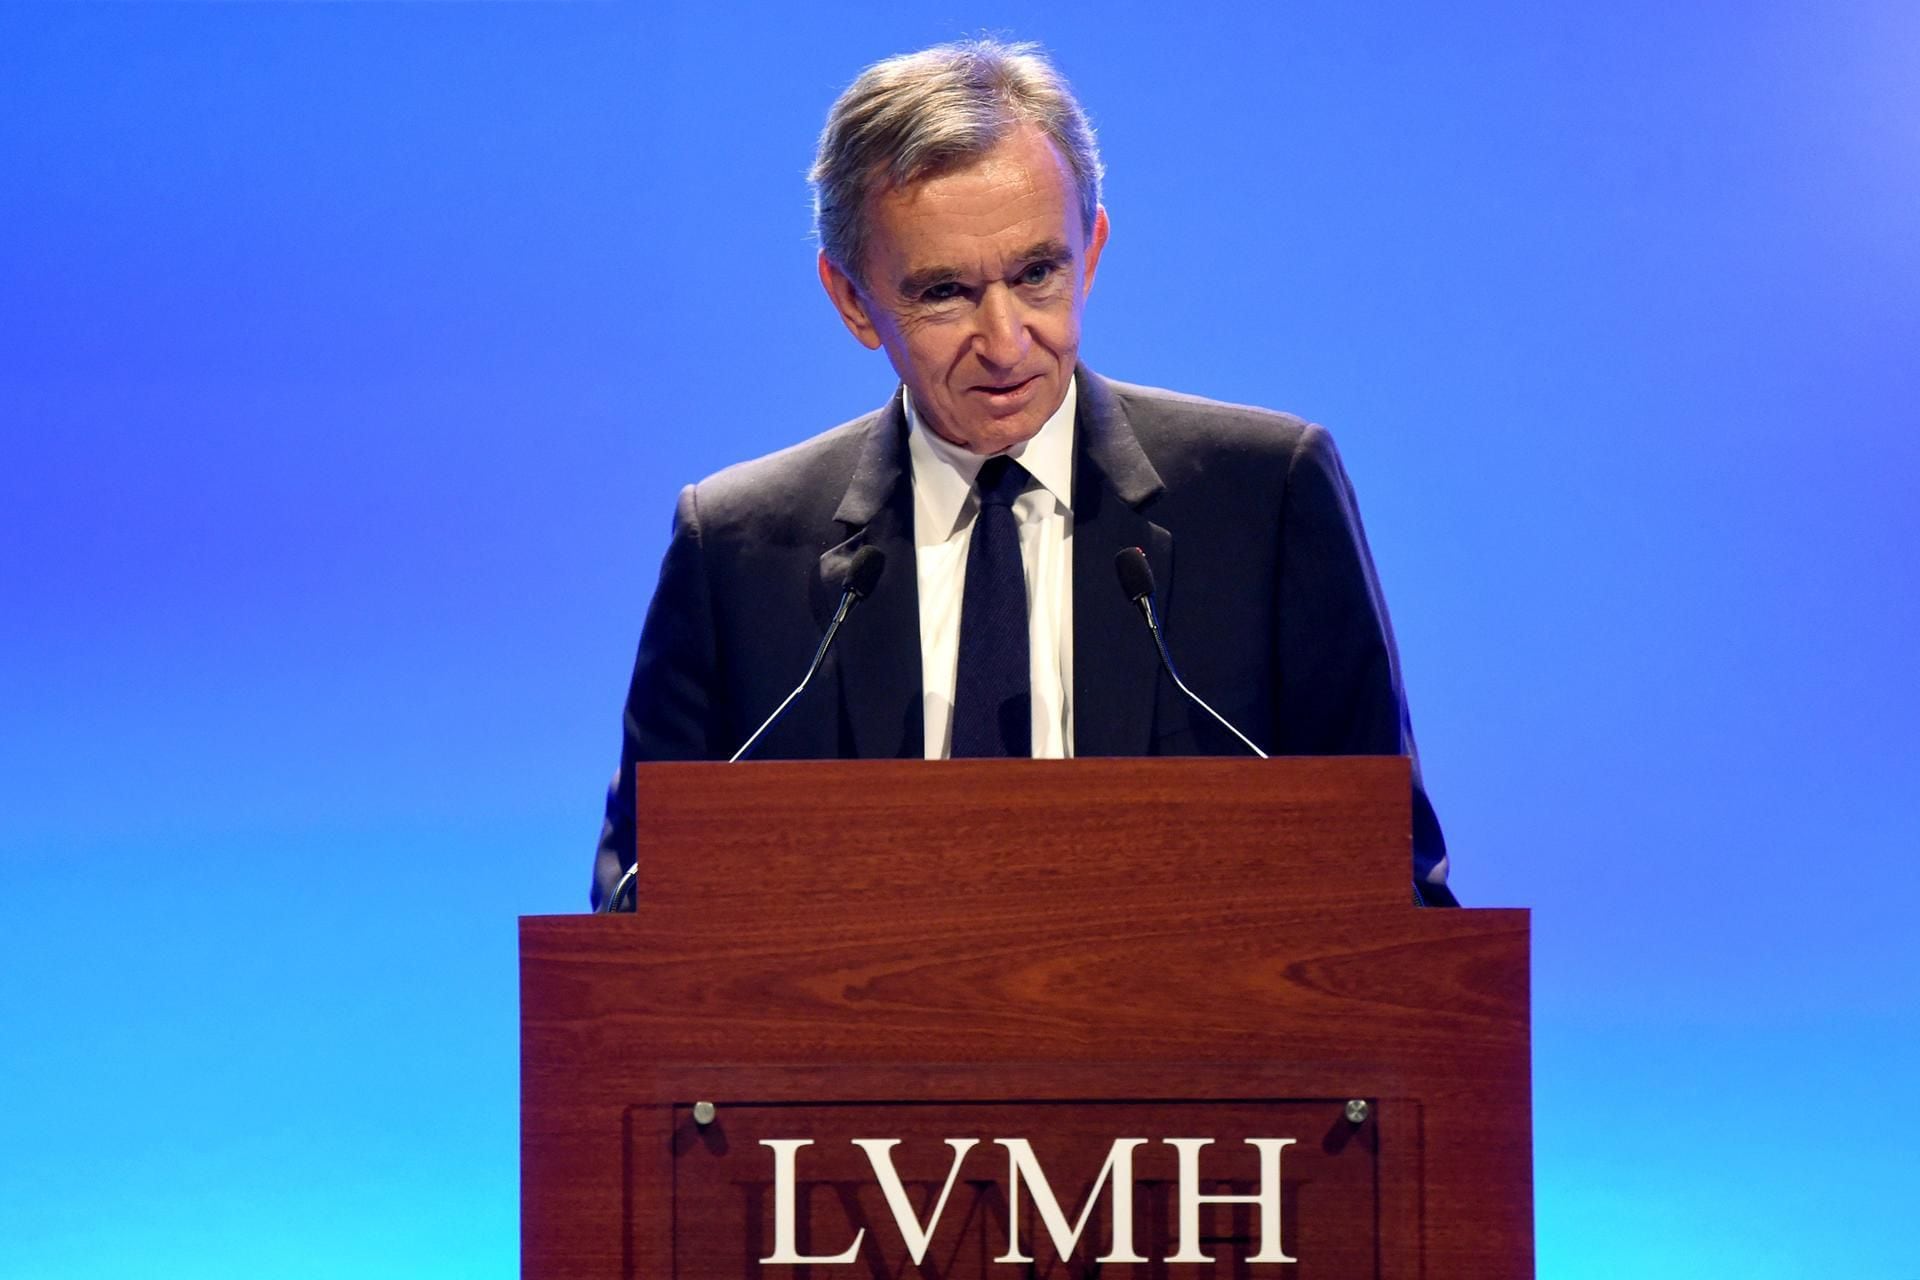 Meet LVMH's Bernard Arnault – the third-richest person in the